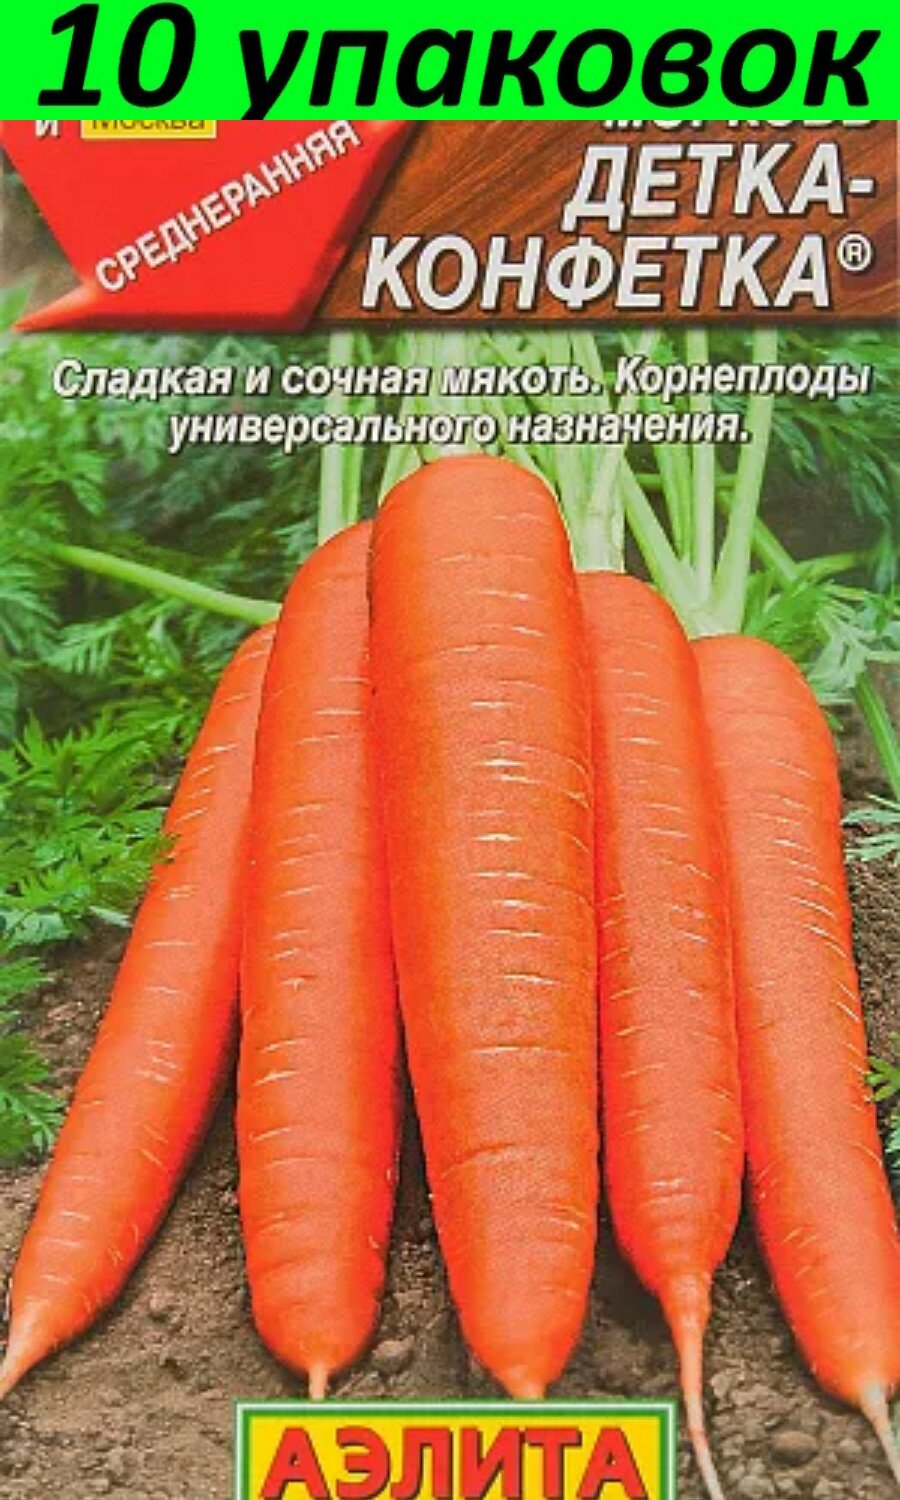 Семена Морковь Детка-конфетка 10уп по 2г (Аэлита)